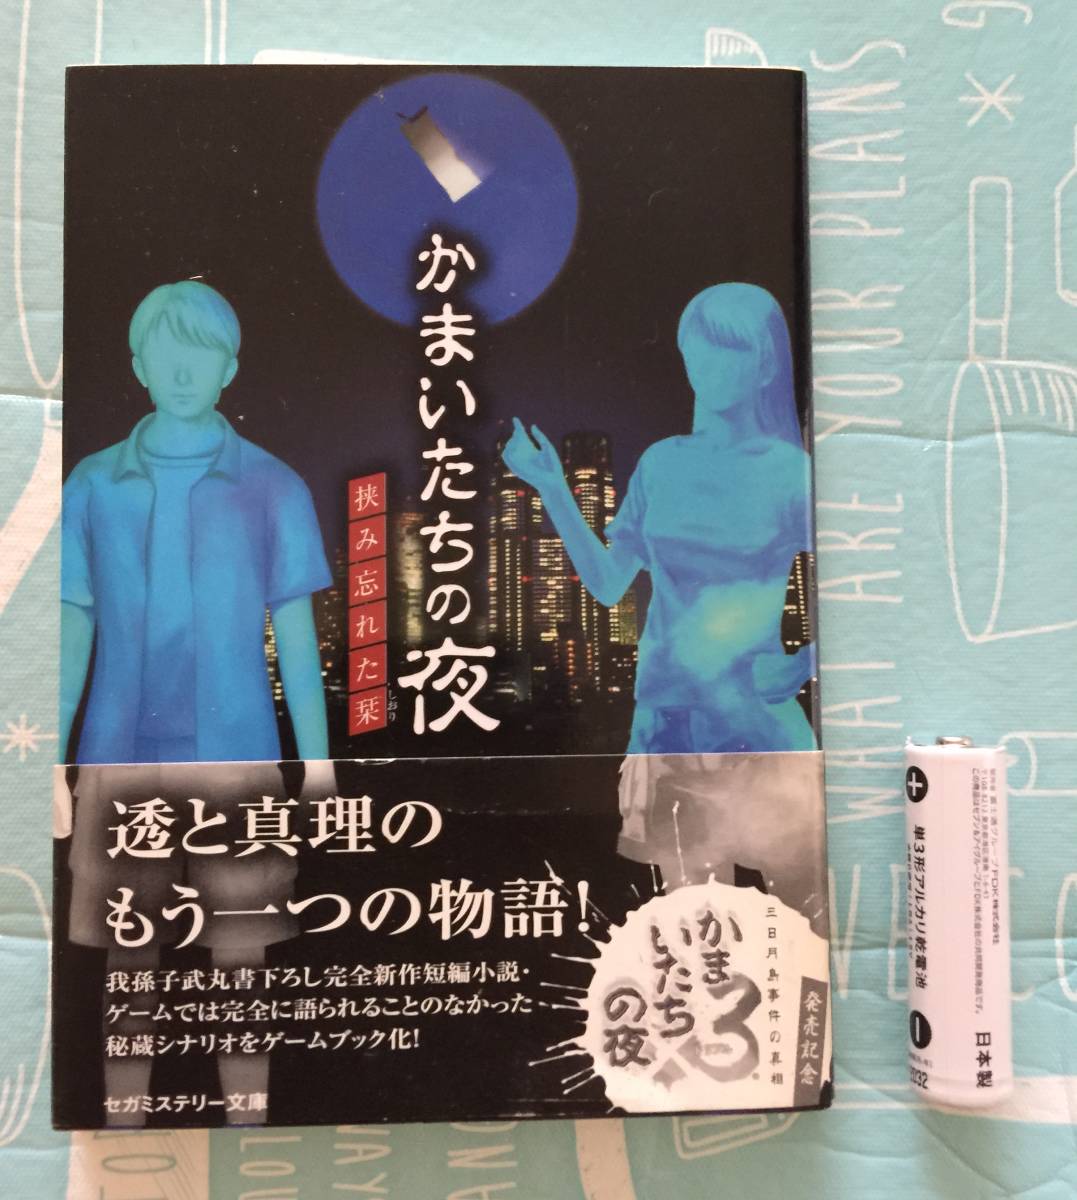  новый товар [ серп кама .... ночь ......] Abiko Takemaru Sega детективный роман библиотека tune soft не продается распространение конец 